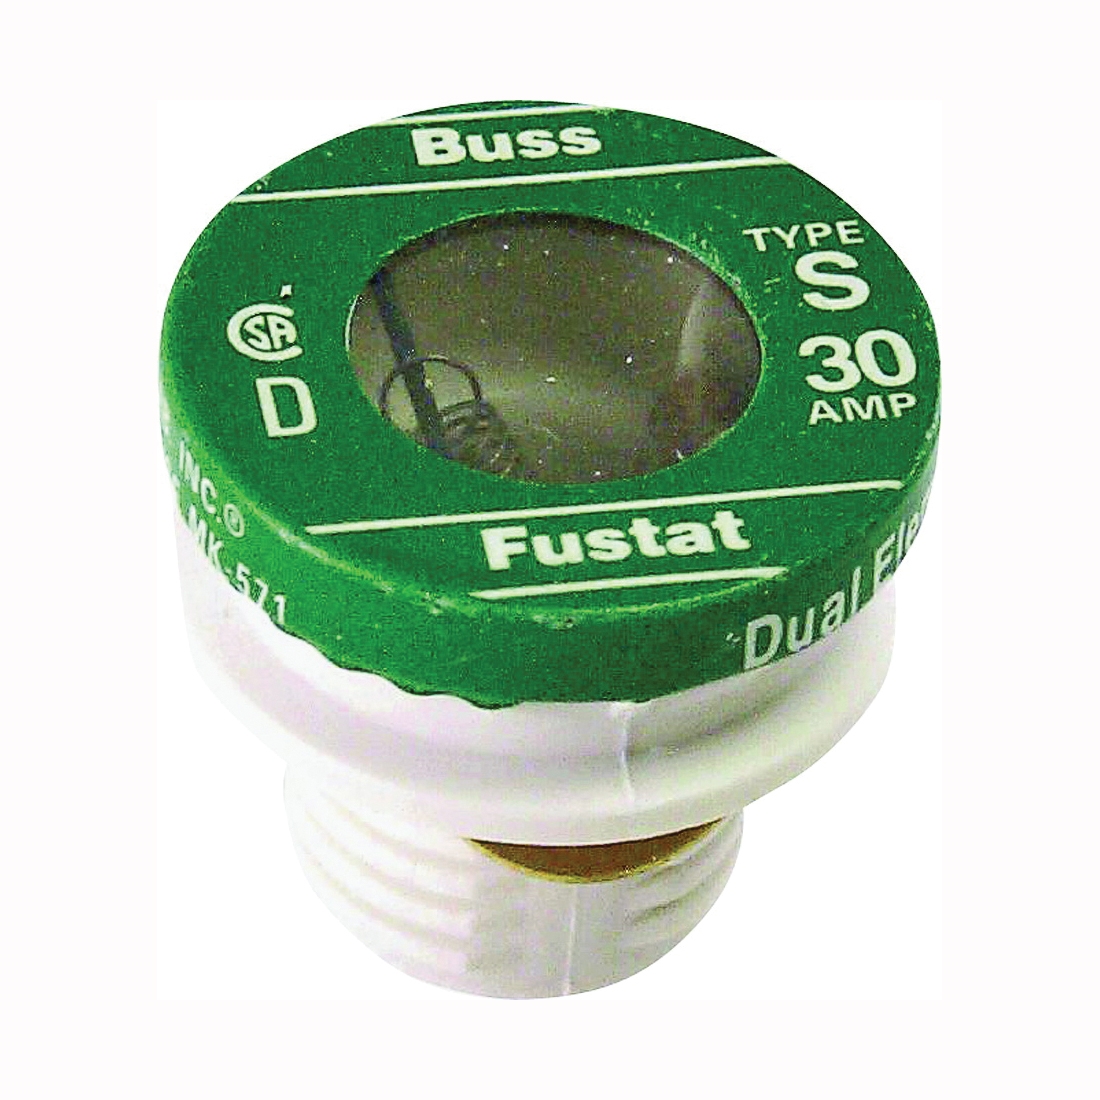 S-30 Plug Fuse, 30 A, 125 V, 10 kA Interrupt, Low Voltage, Time Delay Fuse